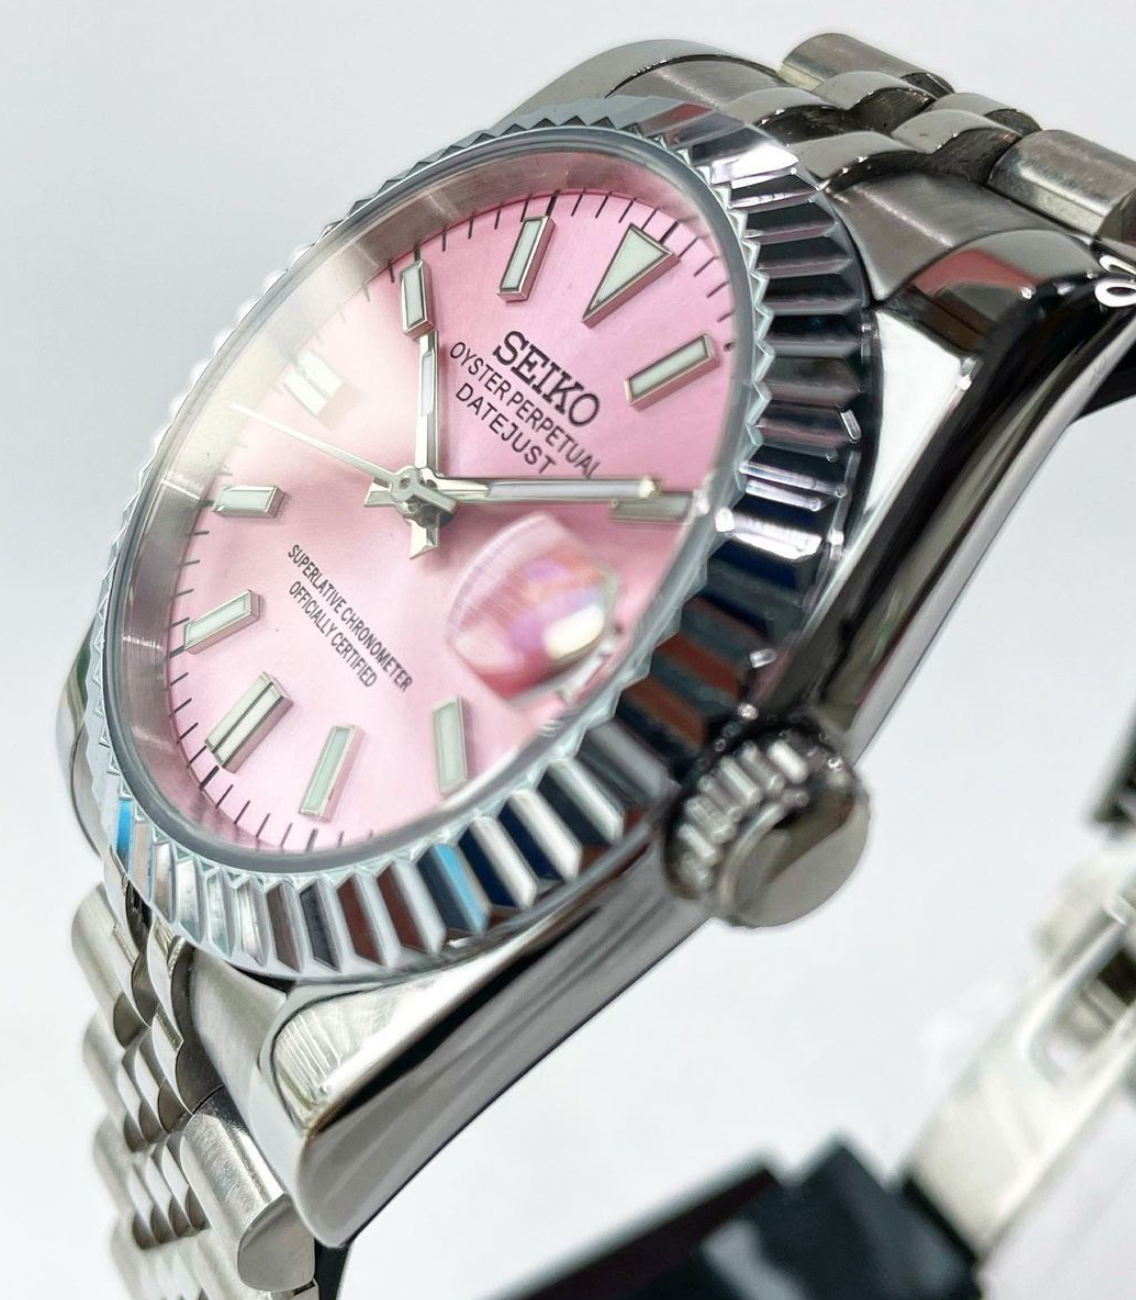 36mm pink seiko mod datejust automatic watch